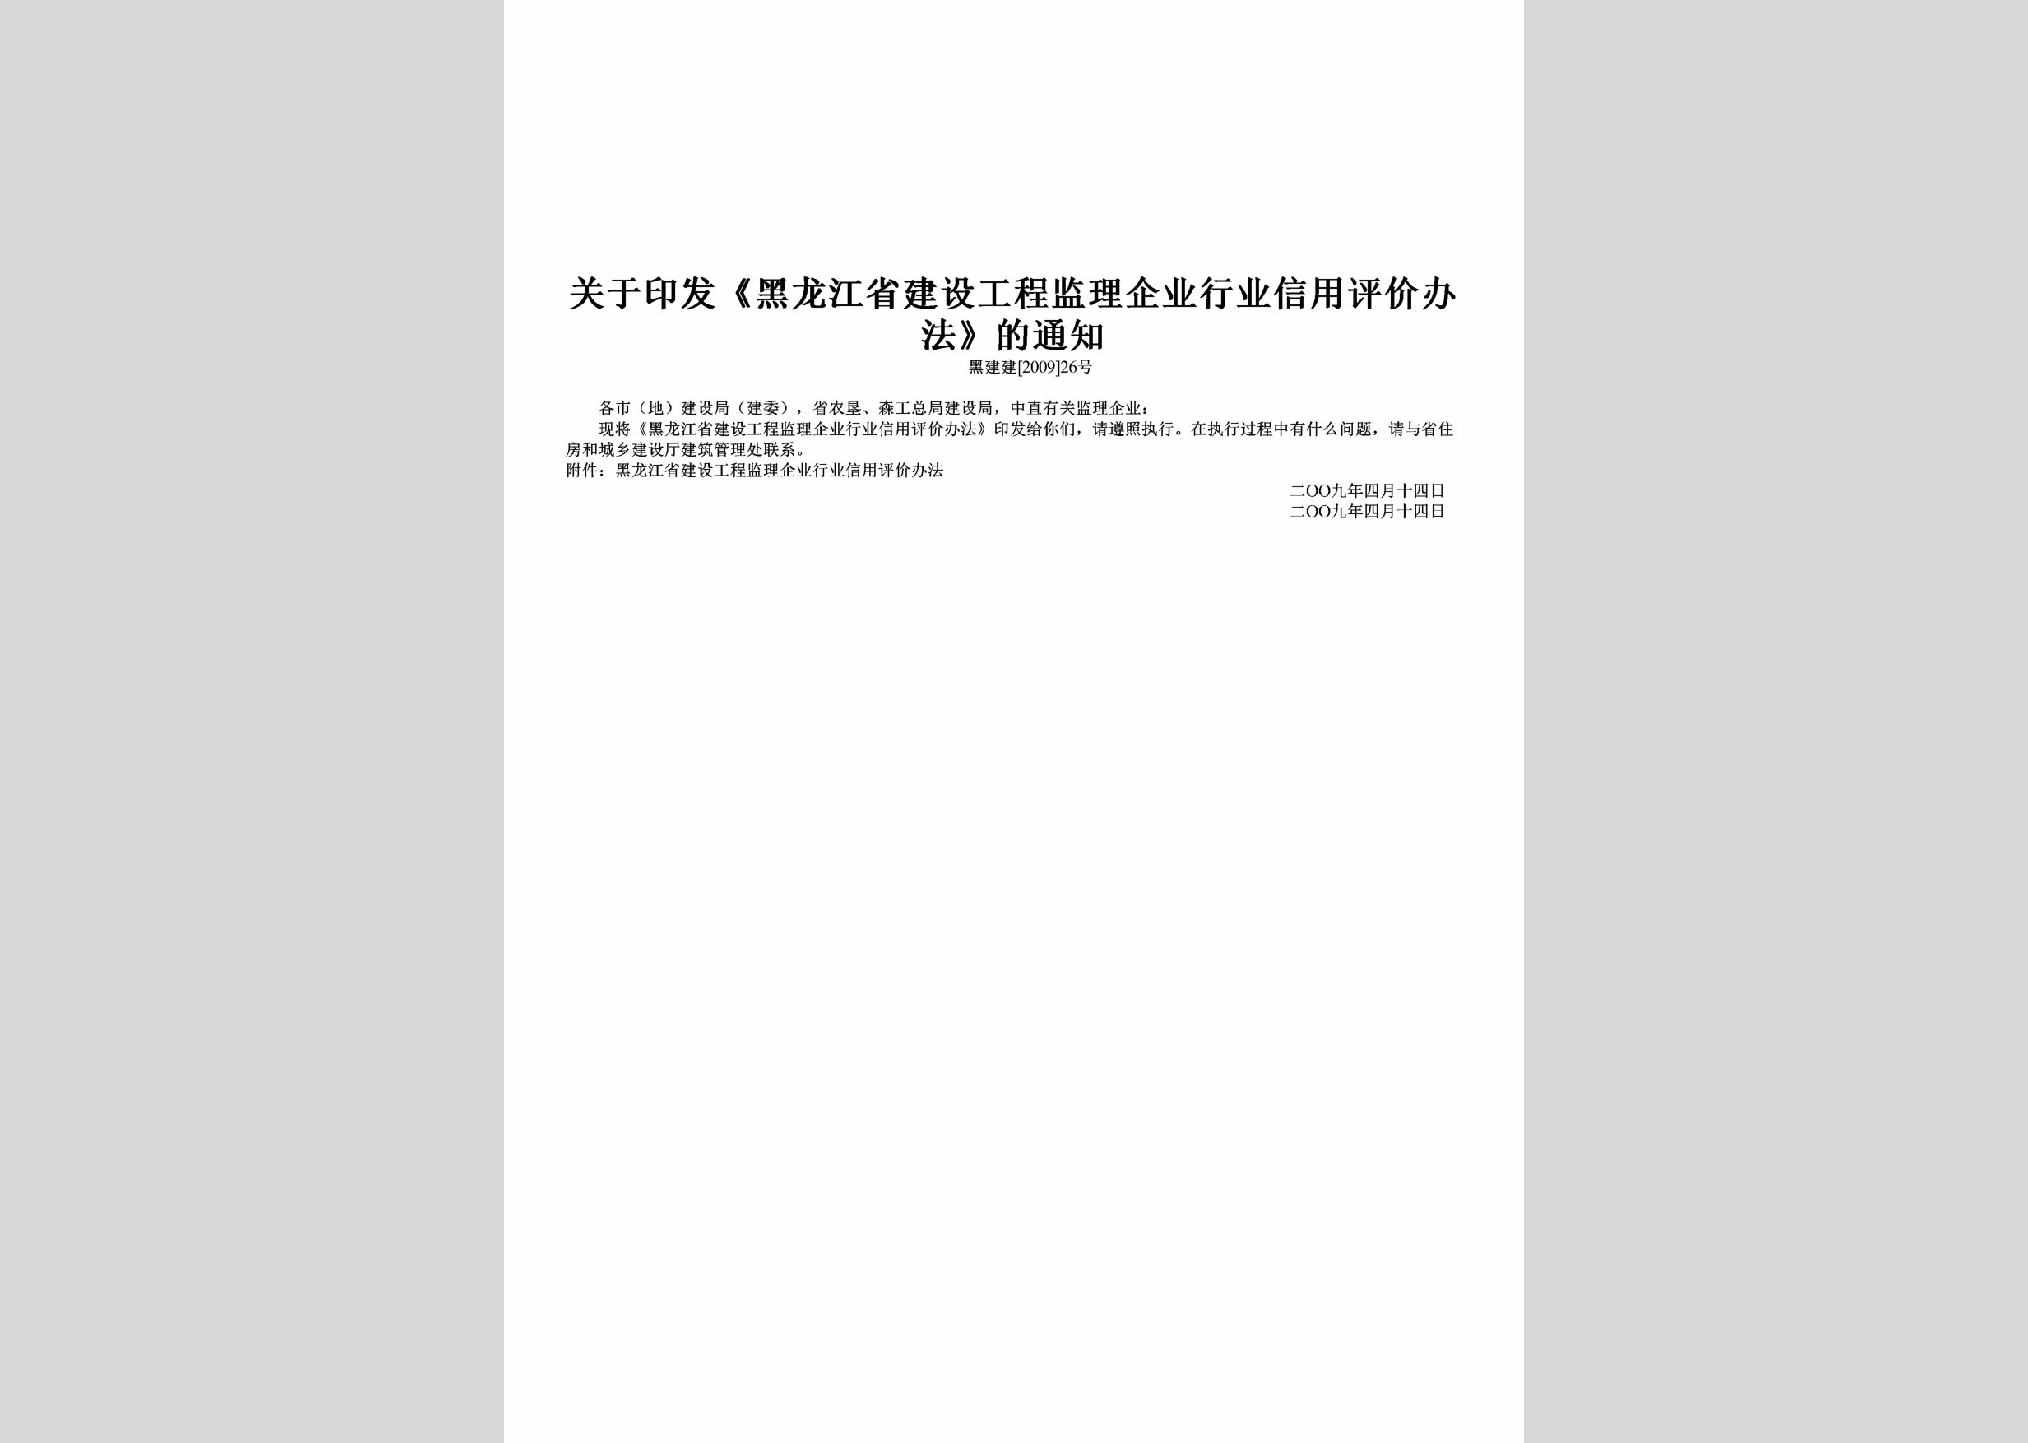 黑建建[2009]26号：关于印发《黑龙江省建设工程监理企业行业信用评价办法》的通知